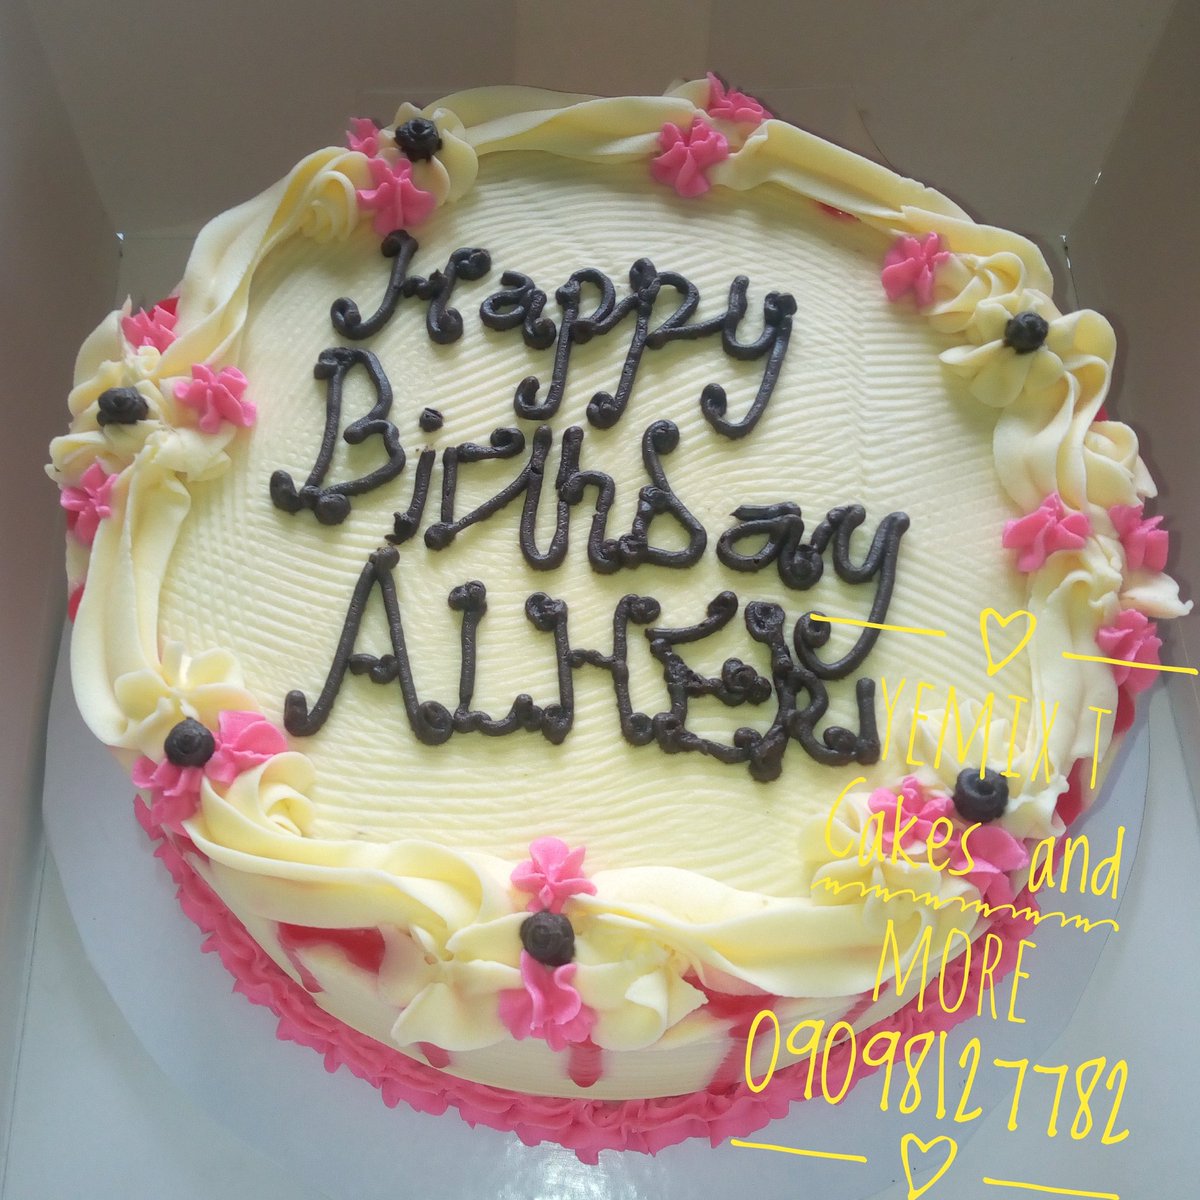 We await your order
DM/Call: 09098127782

#naijabaker #cakespeaksnigeria #cakerandbaker #baker #cater #birthdaycake #buttericing